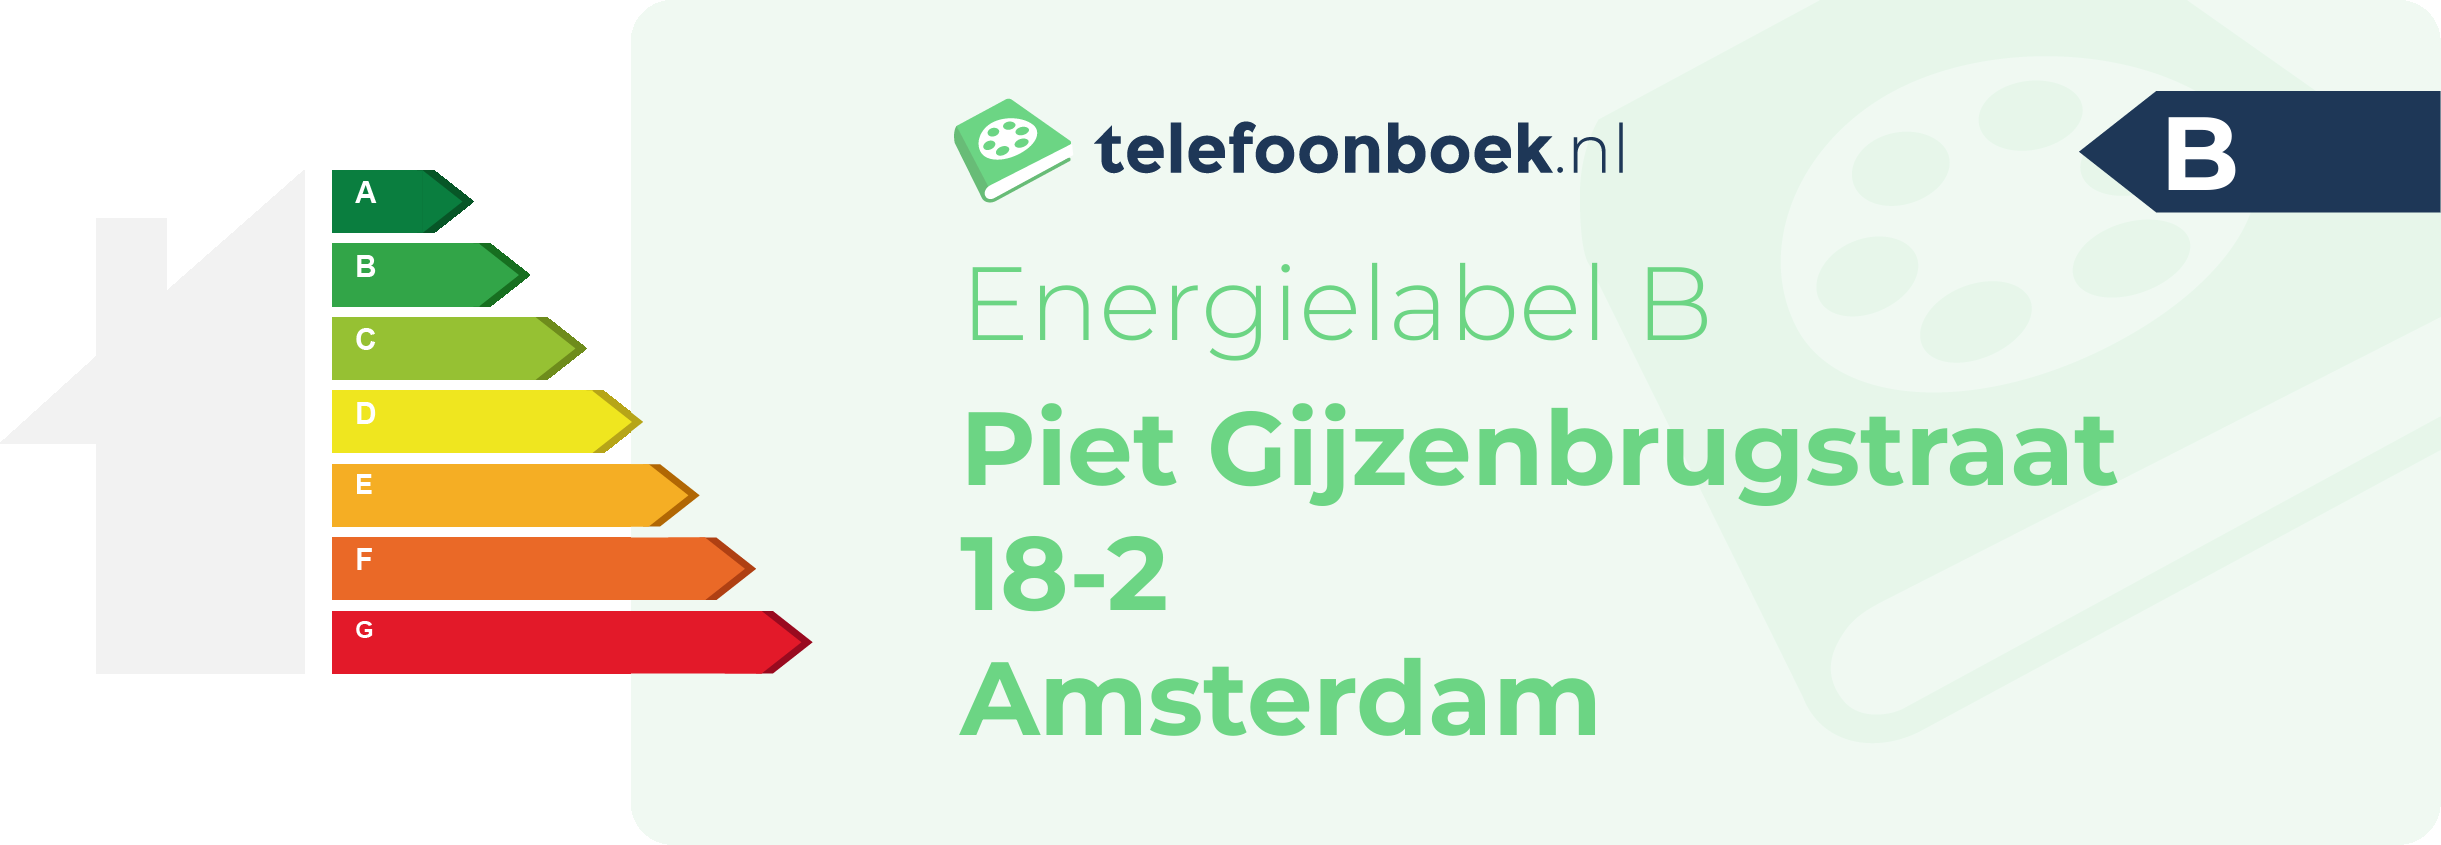 Energielabel Piet Gijzenbrugstraat 18-2 Amsterdam